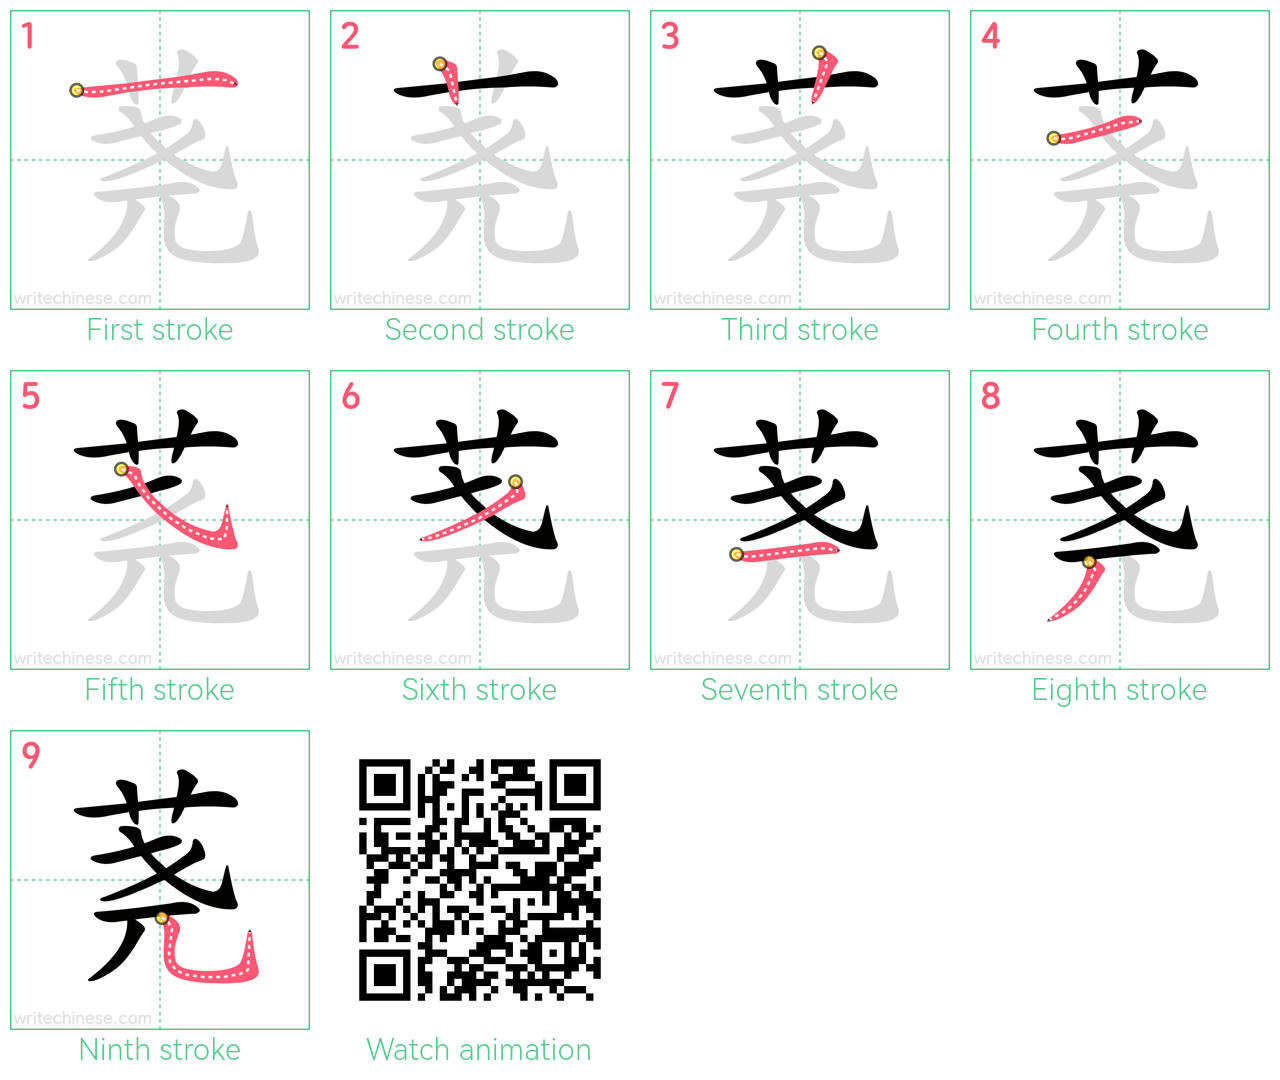 荛 step-by-step stroke order diagrams